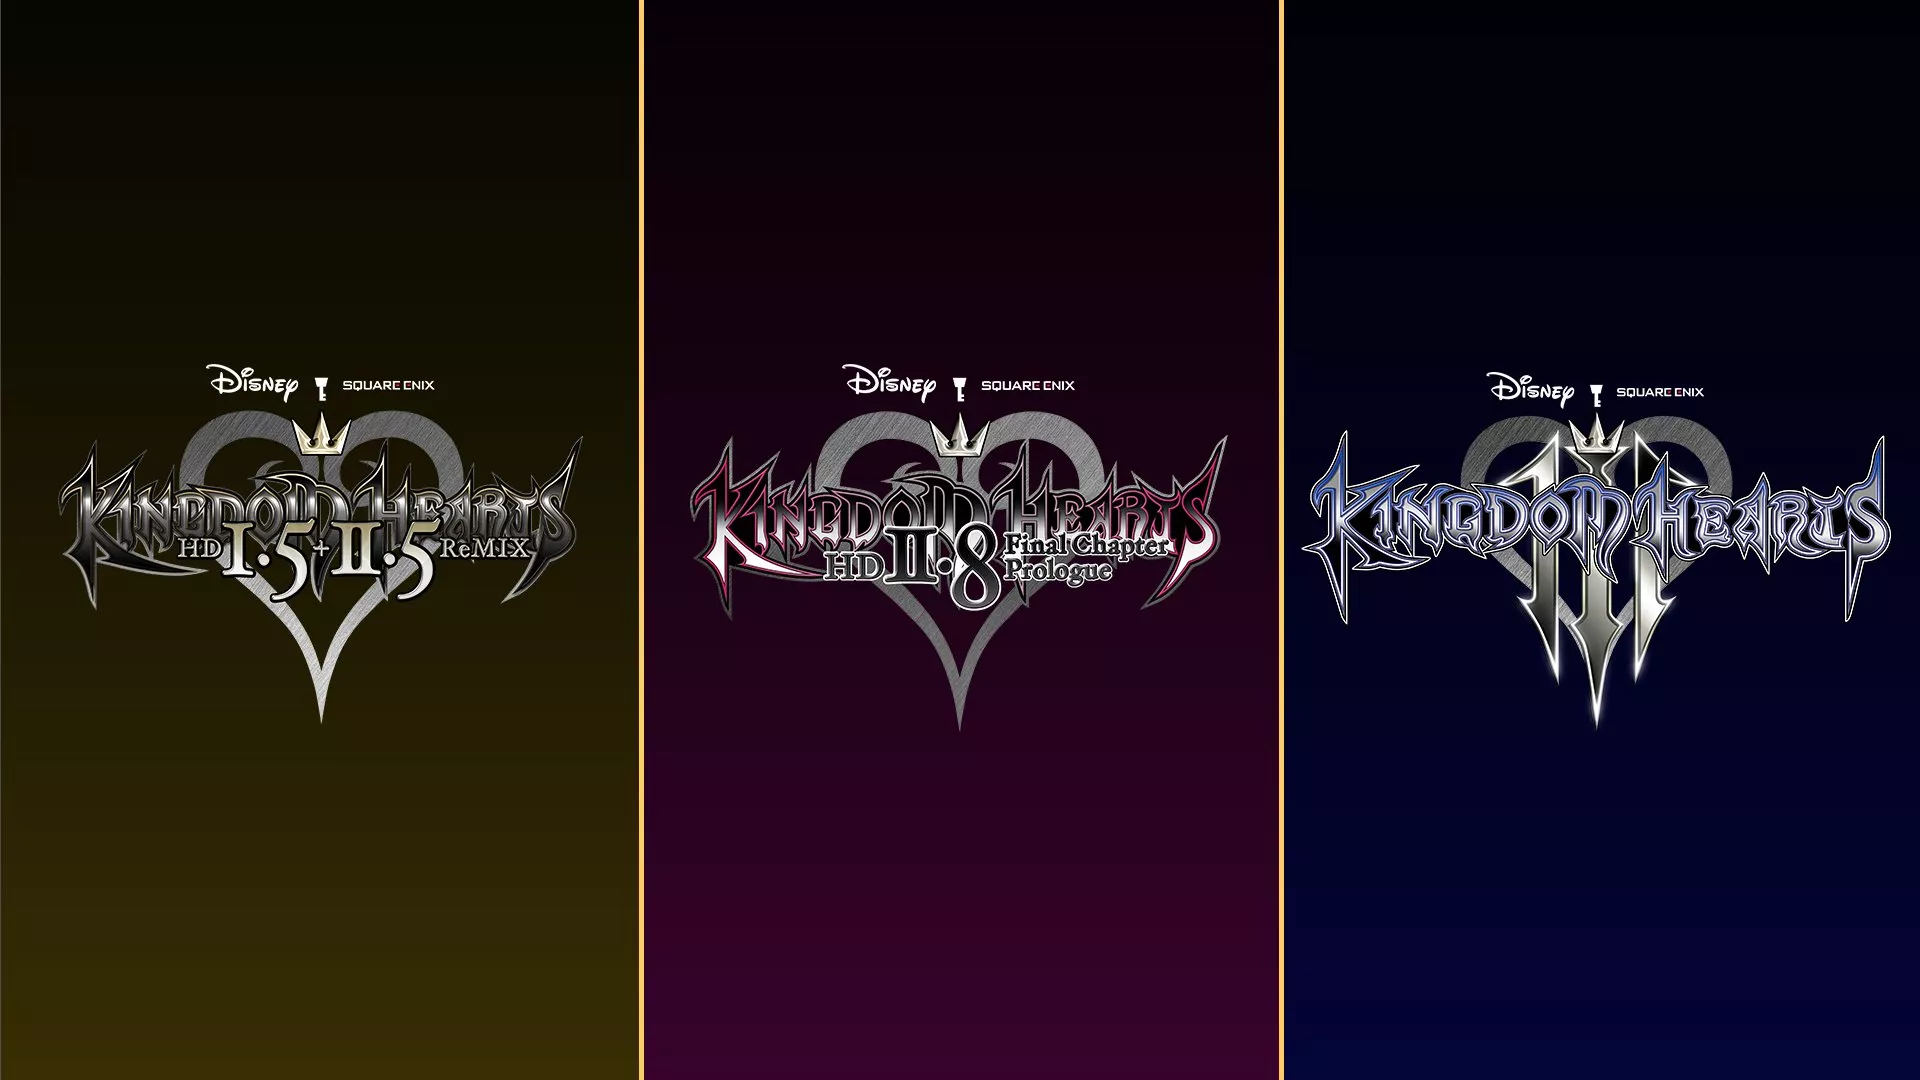 Die Kingdom Hearts-Reihe erscheint auf der Switch Heropic